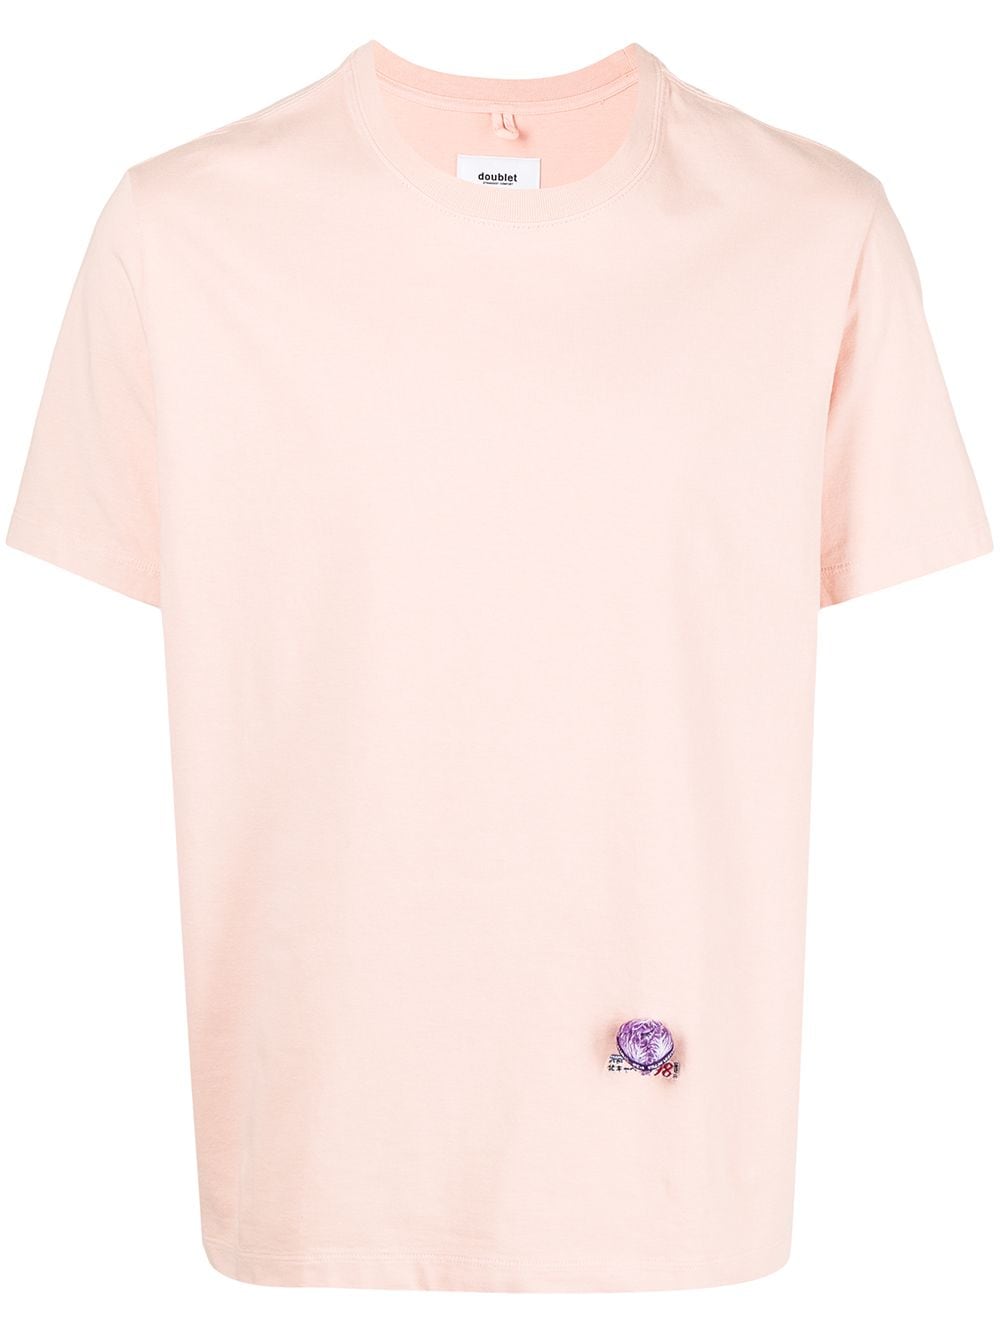 Doublet Purple Cabbage T-Shirt - Rosa von Doublet